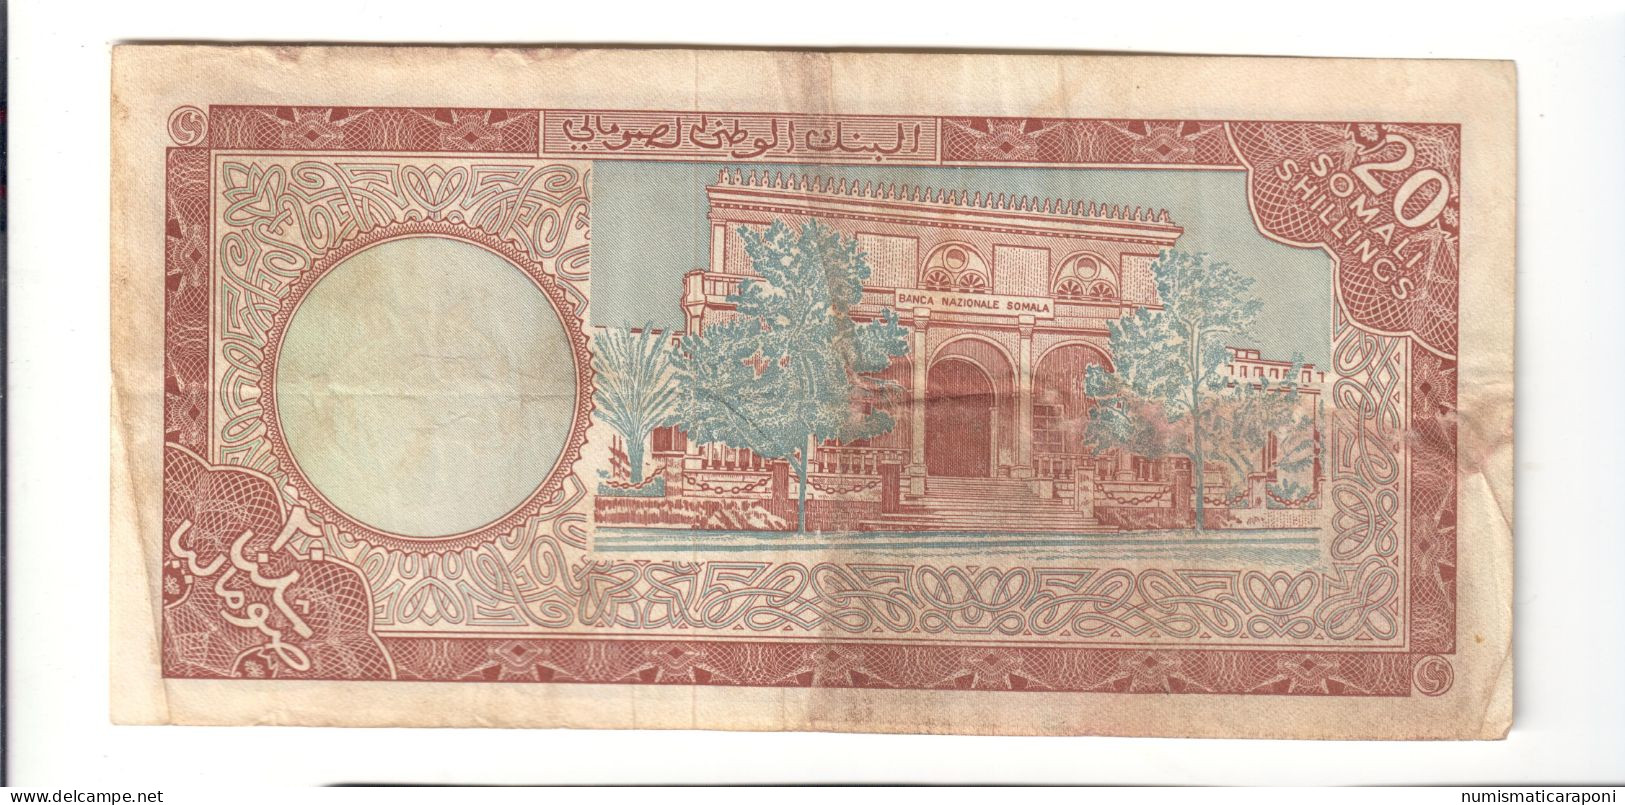 Banca Nazionale Somala 20 Scellini Somali Mogadiscio 1971 Bb LOTTO 2476 - Somalia